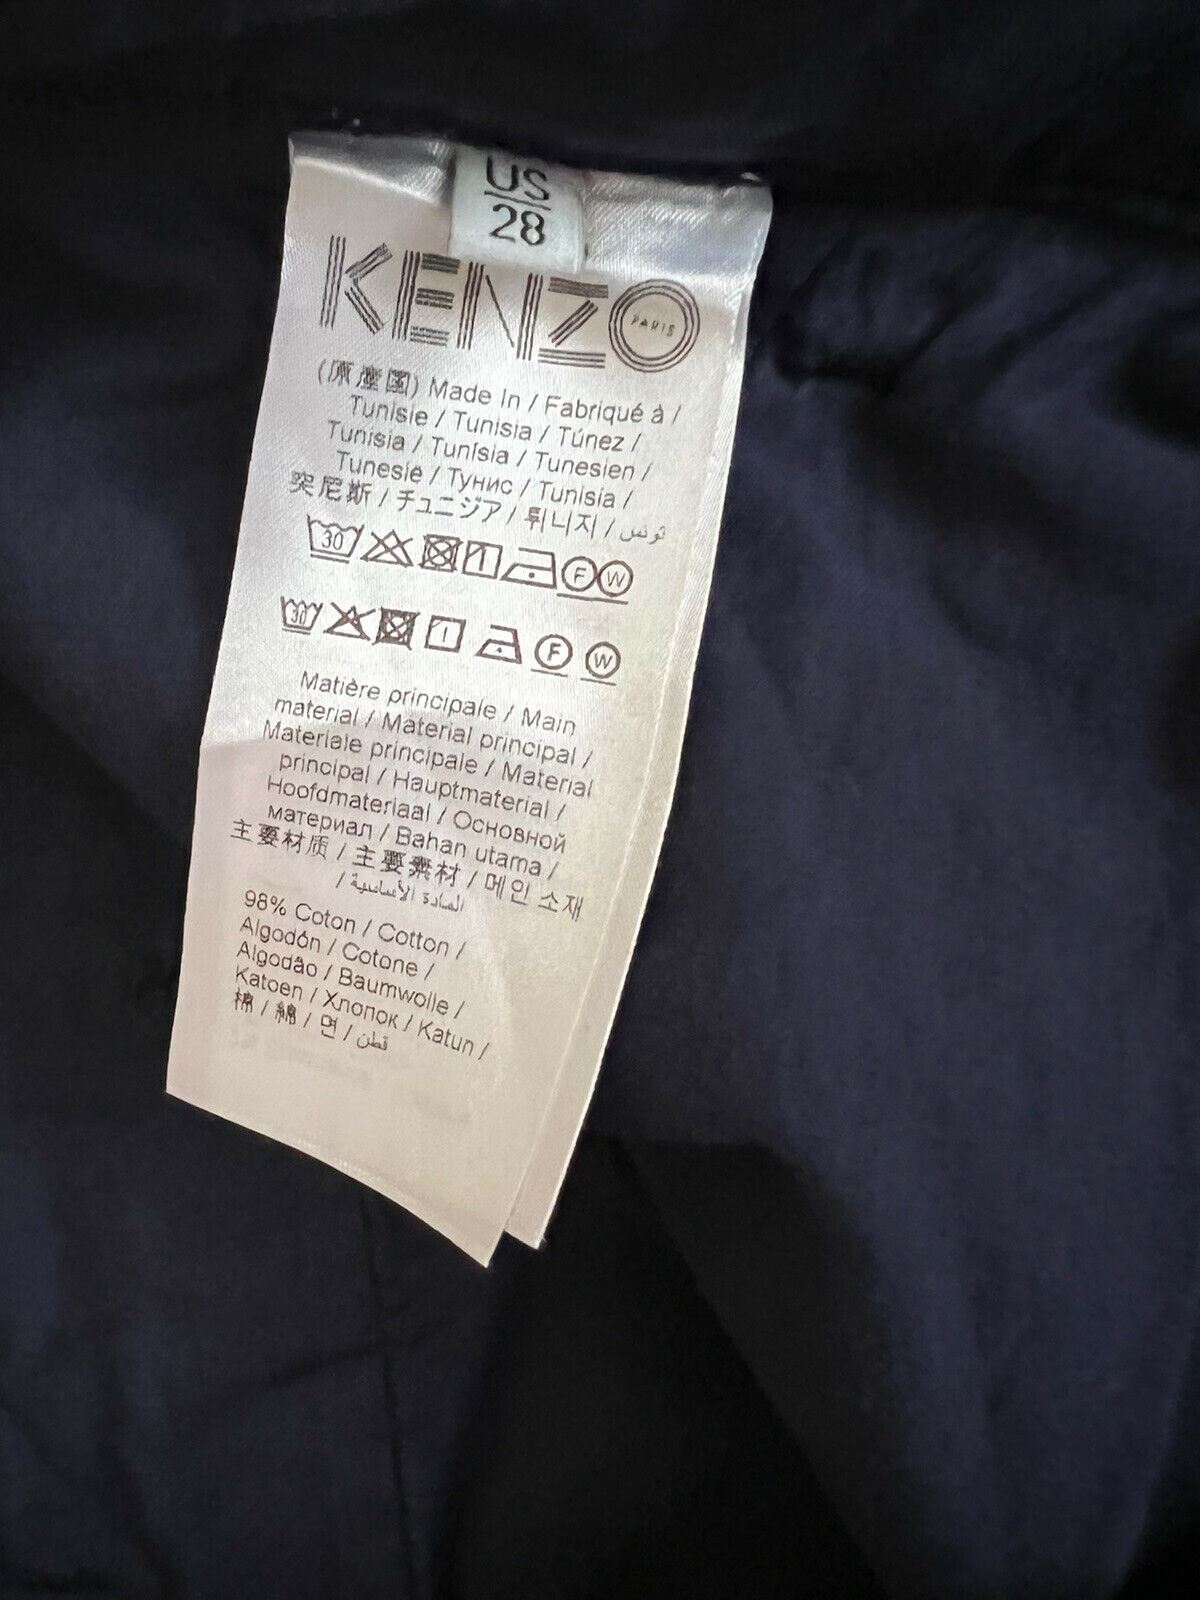 Neu mit Etikett: 280 $ Kenzo Herren-Freizeithose mit Reißverschluss in Mitternachtsblau, Größe 28 US (44 Euro)